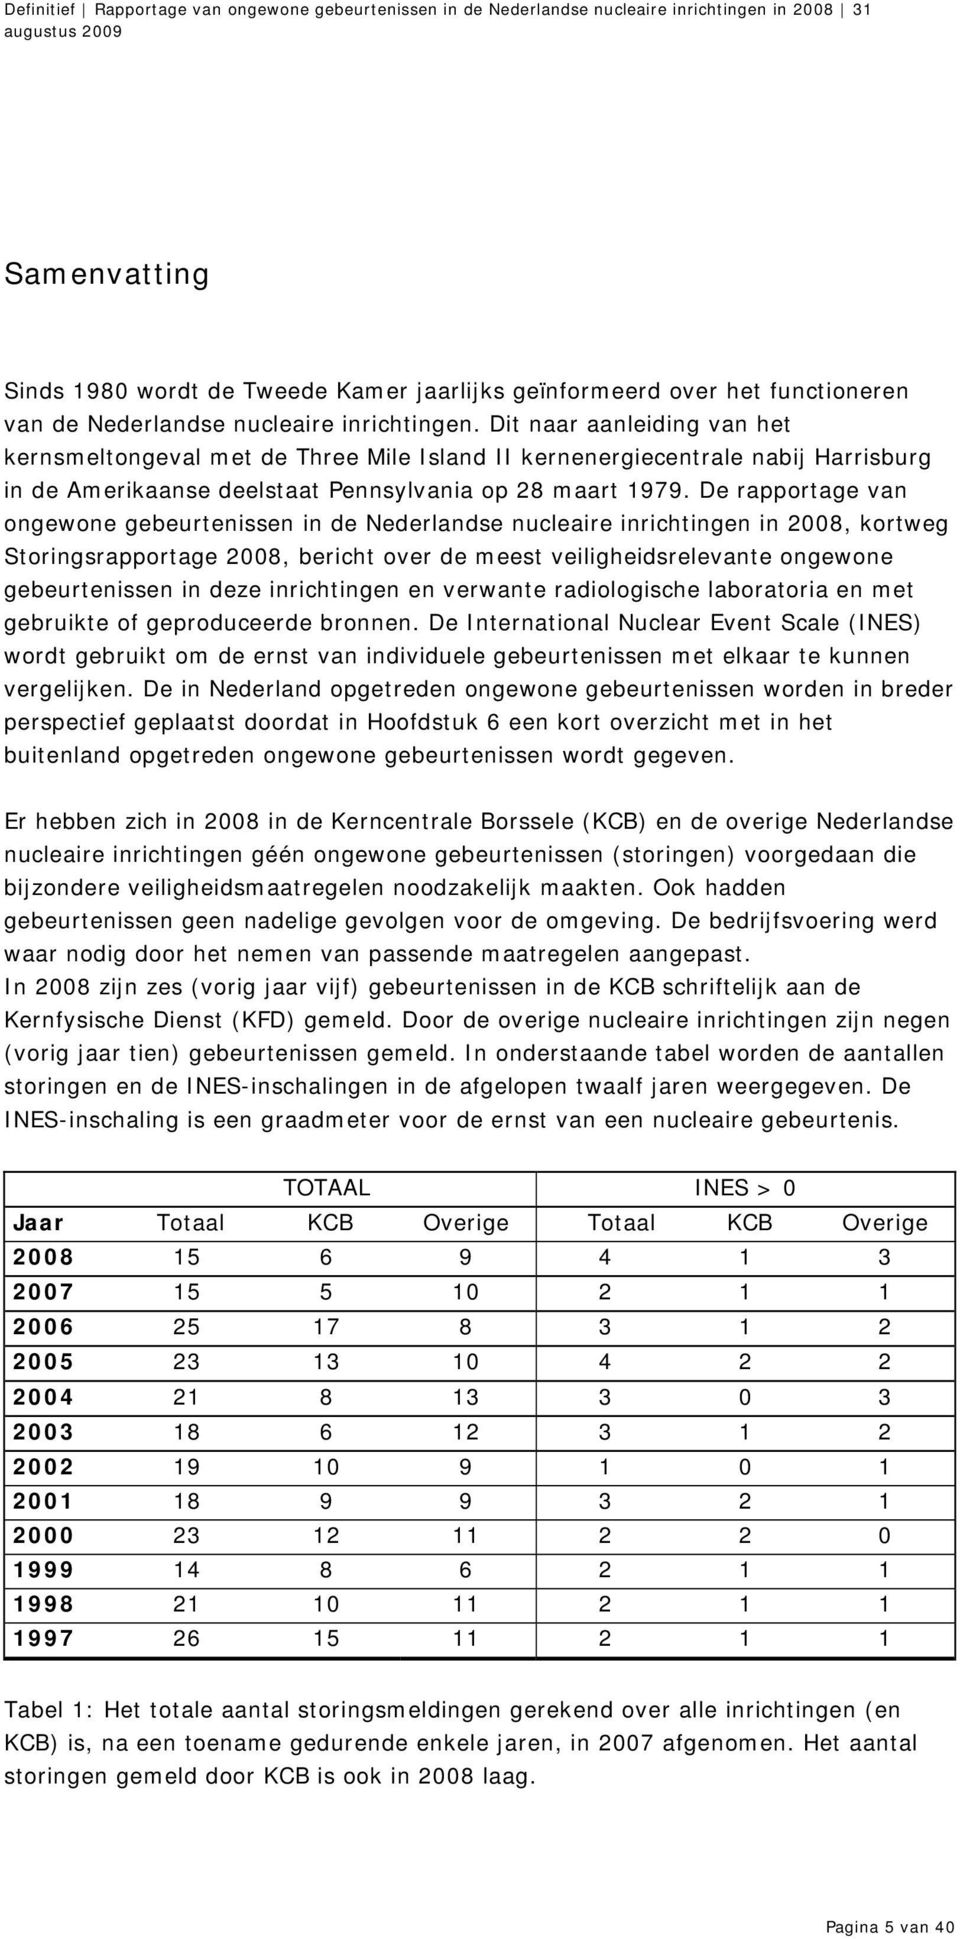 De rapportage van ongewone gebeurtenissen in de Nederlandse nucleaire inrichtingen in 2008, kortweg Storingsrapportage 2008, bericht over de meest veiligheidsrelevante ongewone gebeurtenissen in deze